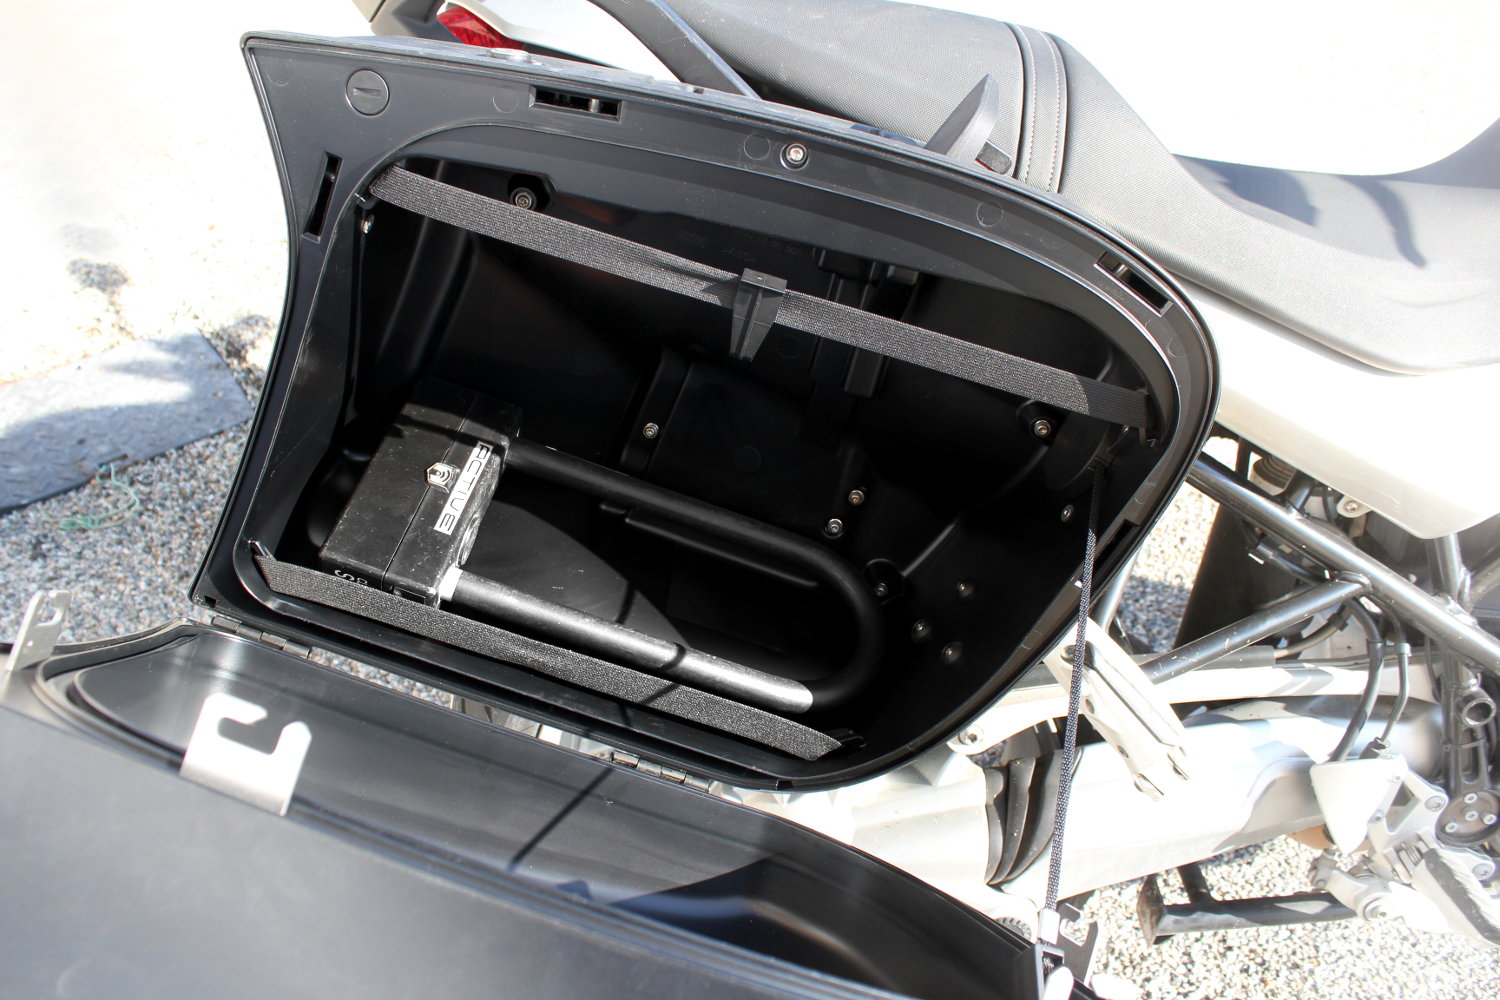 Los accesorios de equipaje son sin duda la solución más cómoda para transportar el antirrobo de moto. Si no contáis con ninguno, echad un vistazo a las bolsas sobredepósito: ¡las hay bastante baratas!